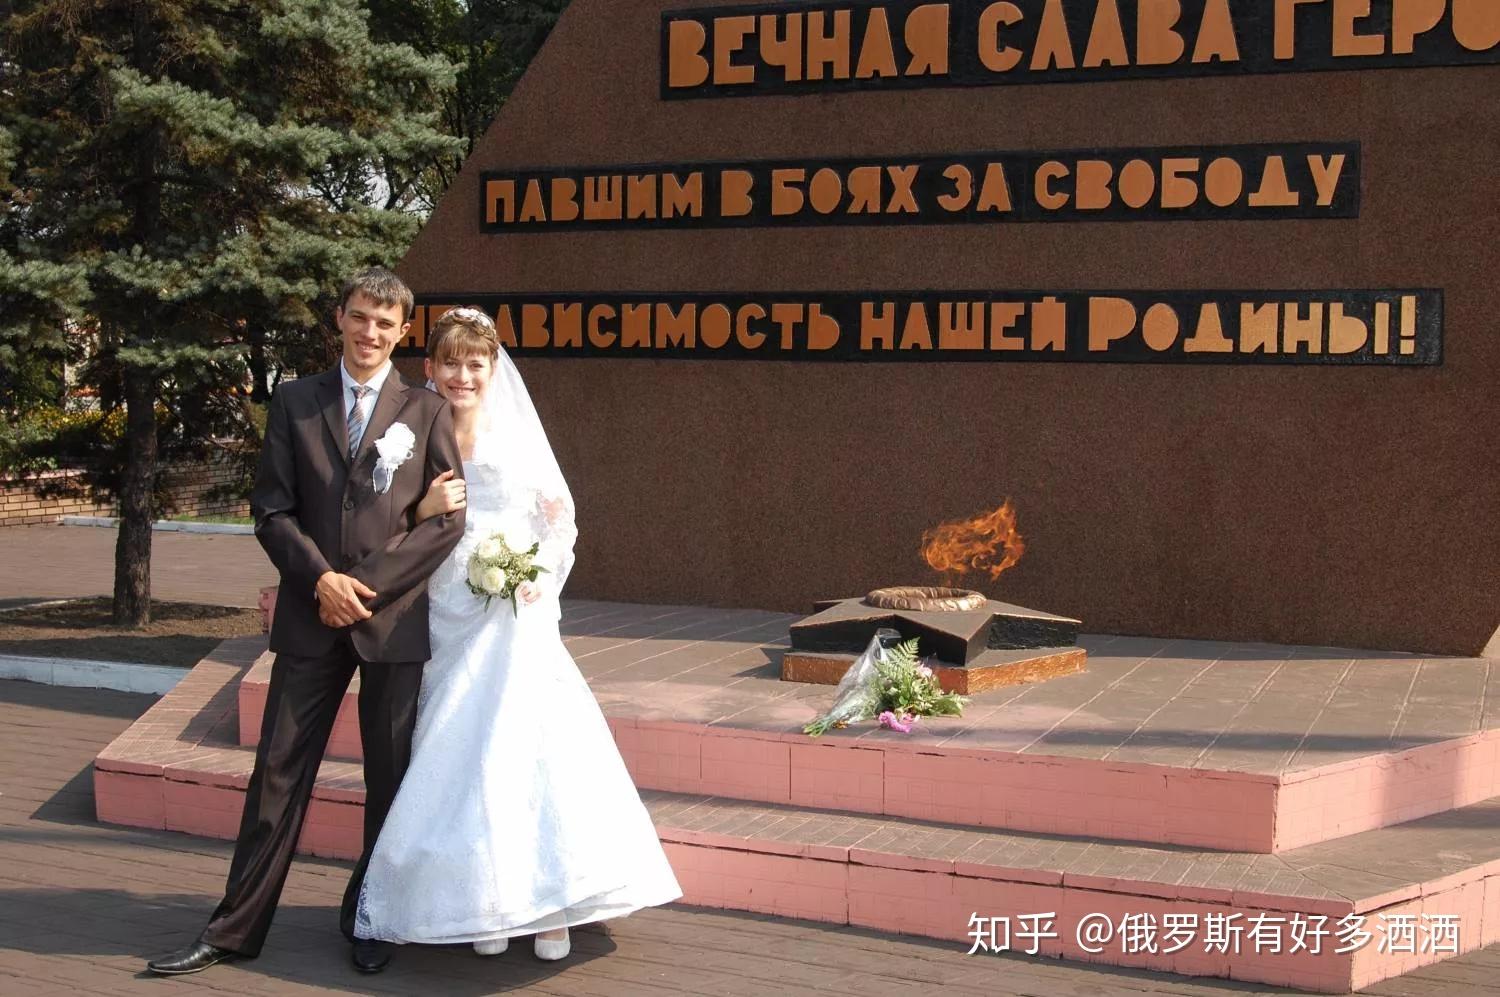 俄罗斯人民跪迎烈士图片